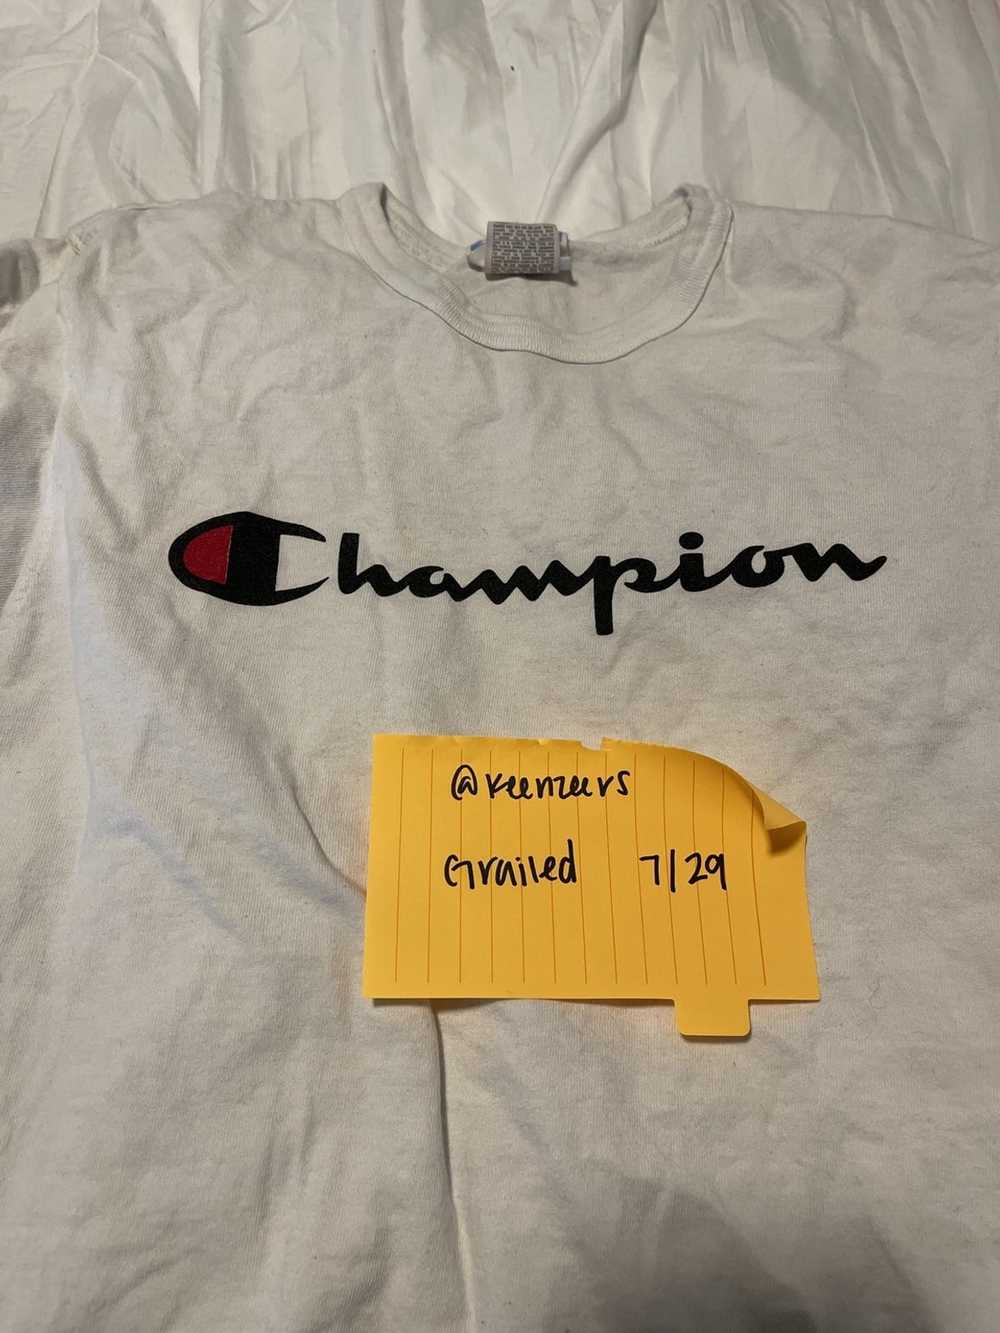 Champion Champion shirt - image 3